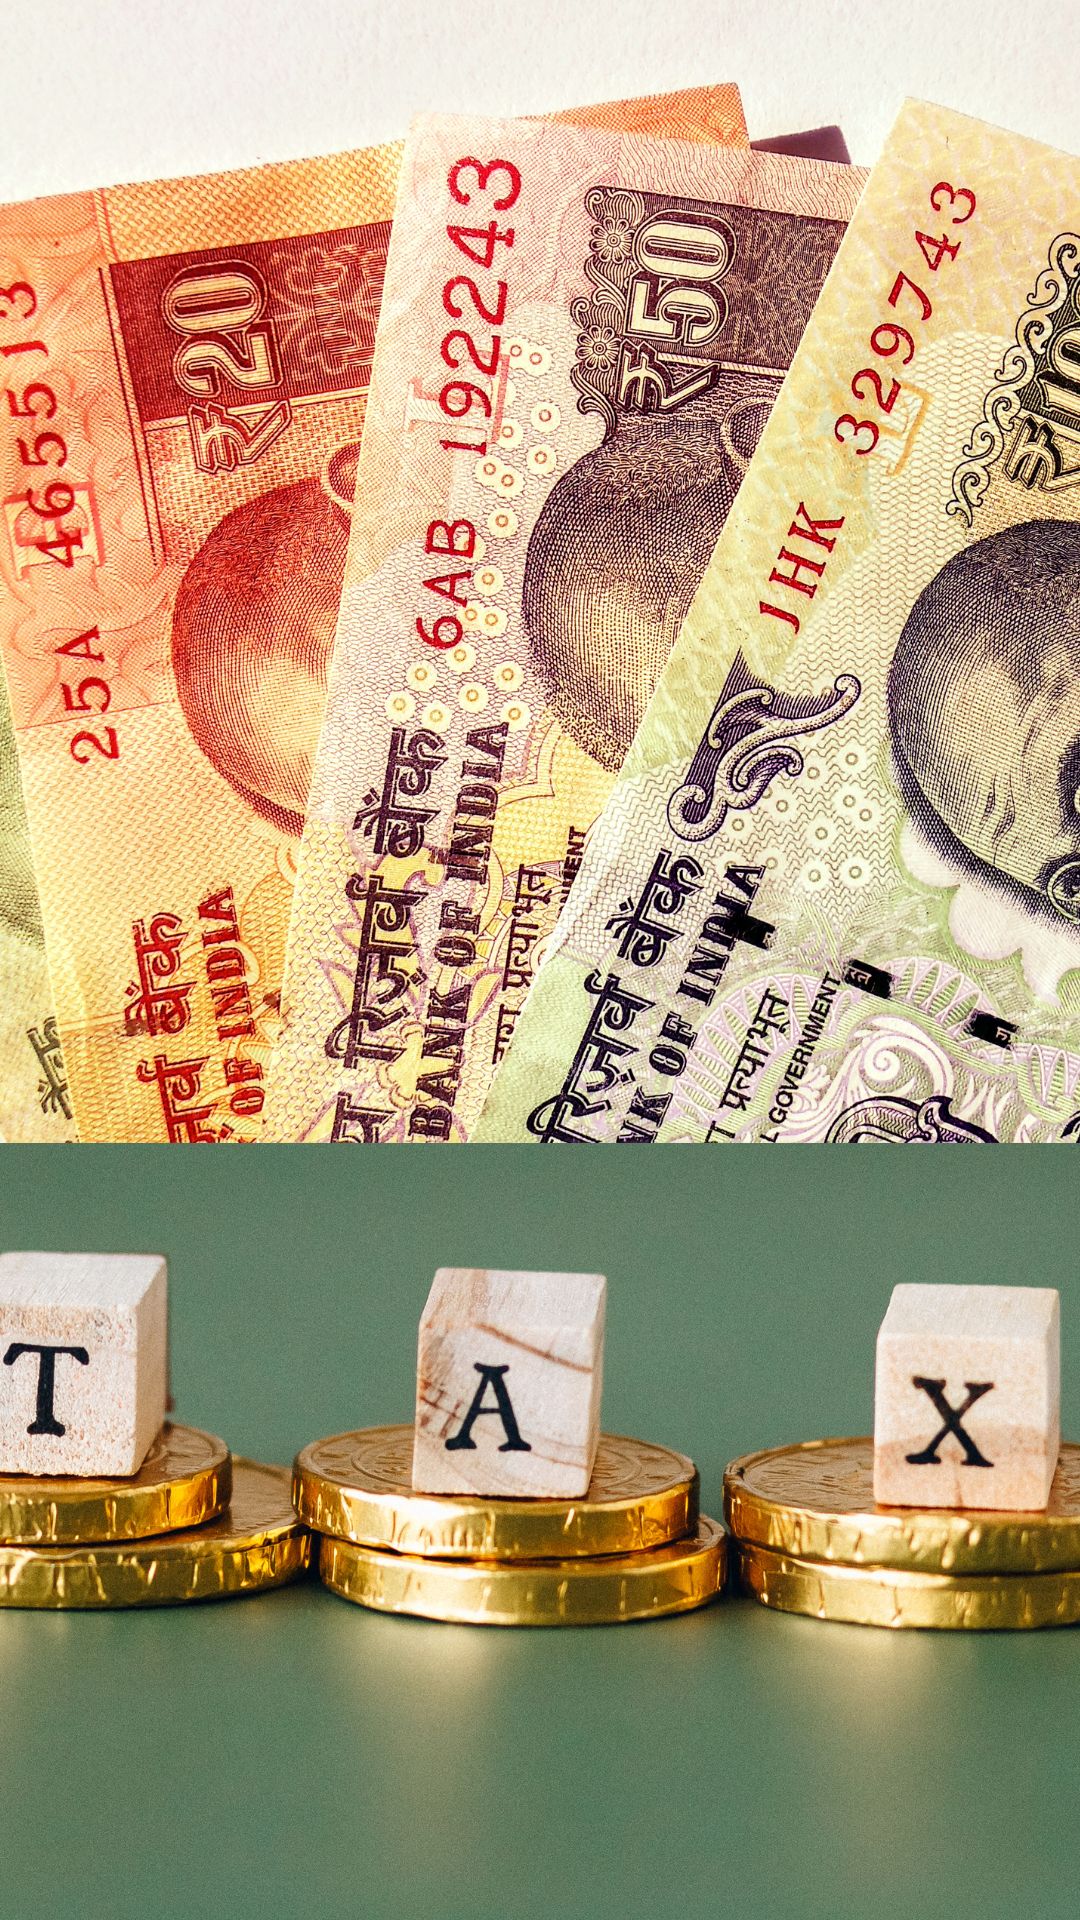 10 लाख रुपये है वार्षिक सैलरी, जानिए नई टैक्स रिजीम में कितना देना होगा टैक्स?